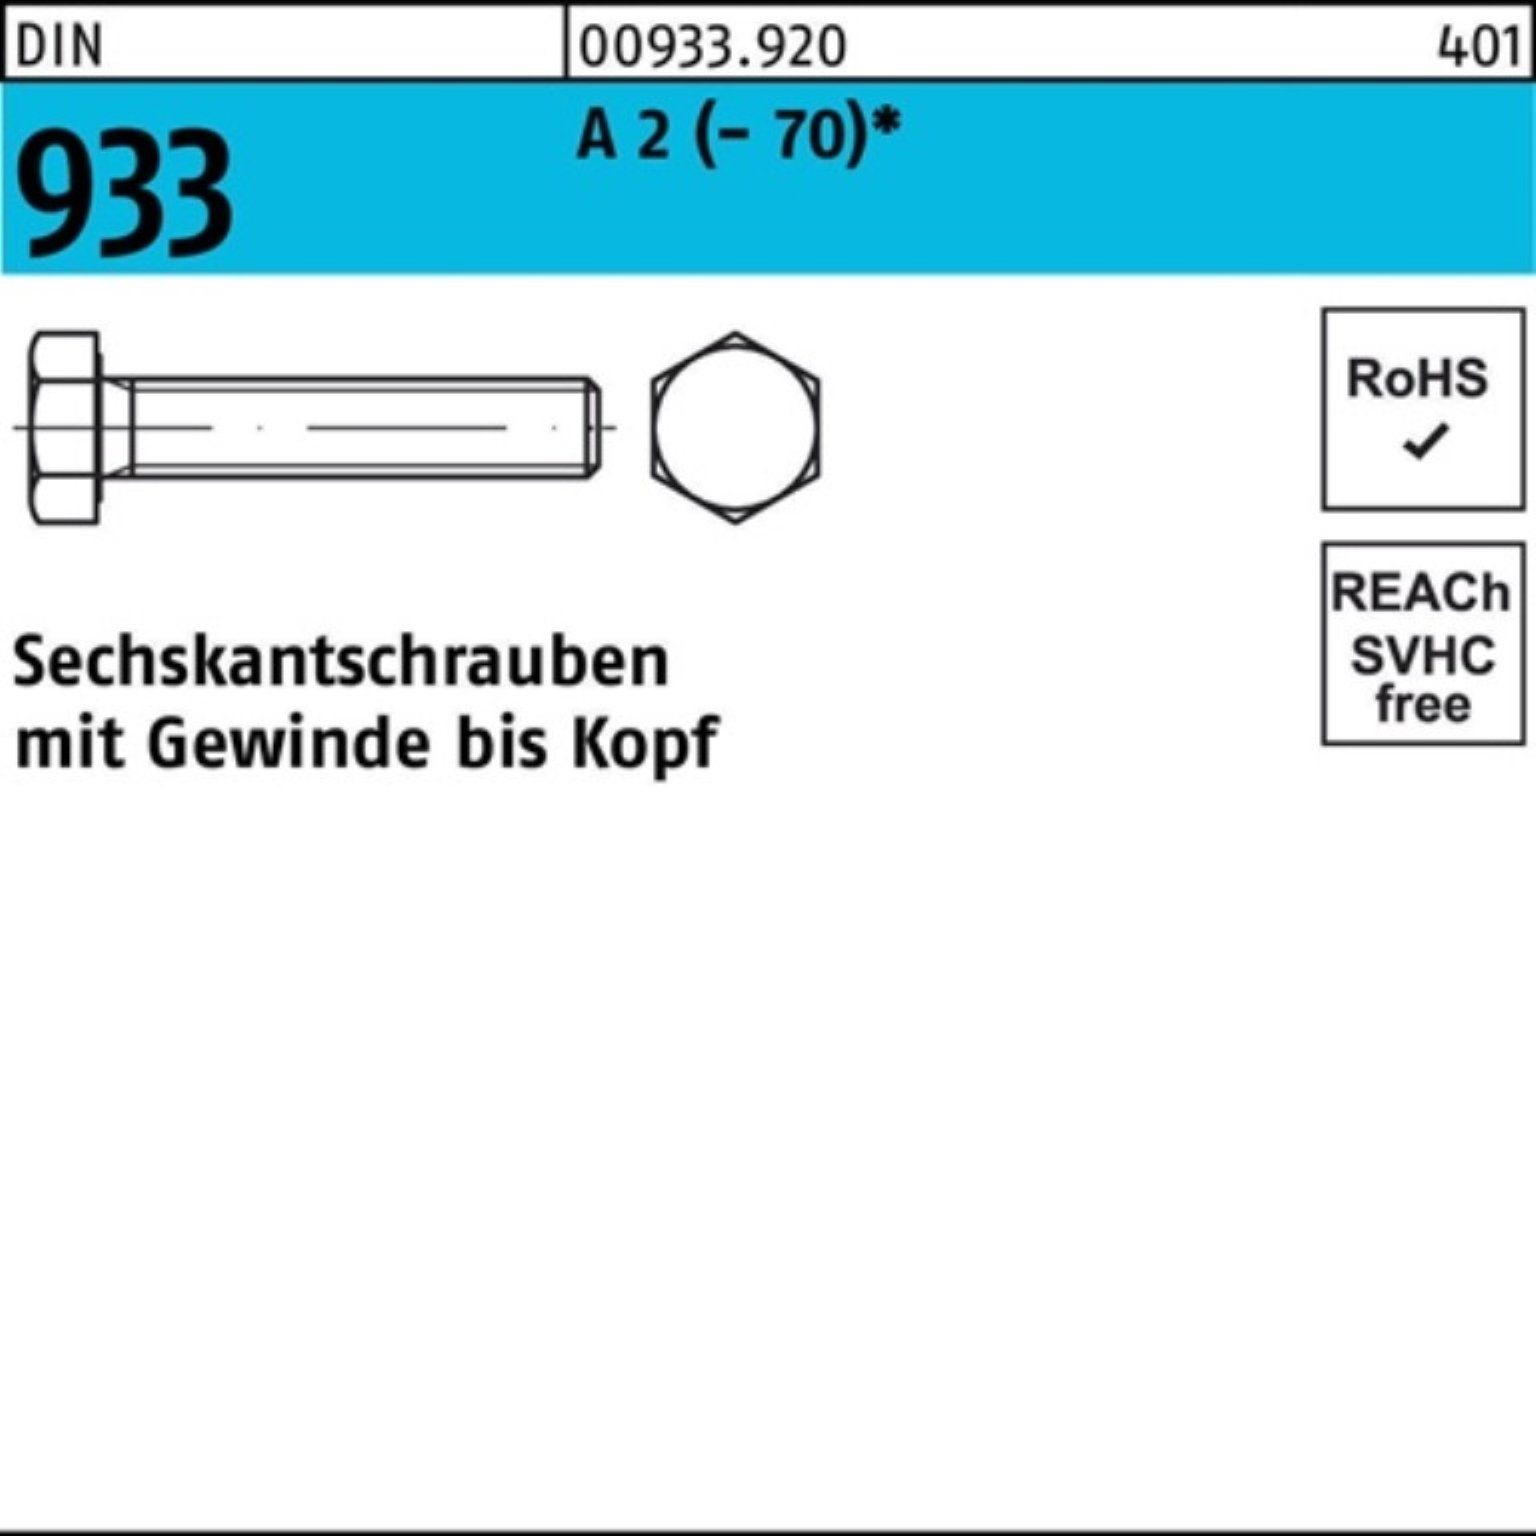 Reyher Sechskantschraube 200er Pack Sechskantschraube DIN 933 VG M8x 18 A 2 (70) 200 Stück D